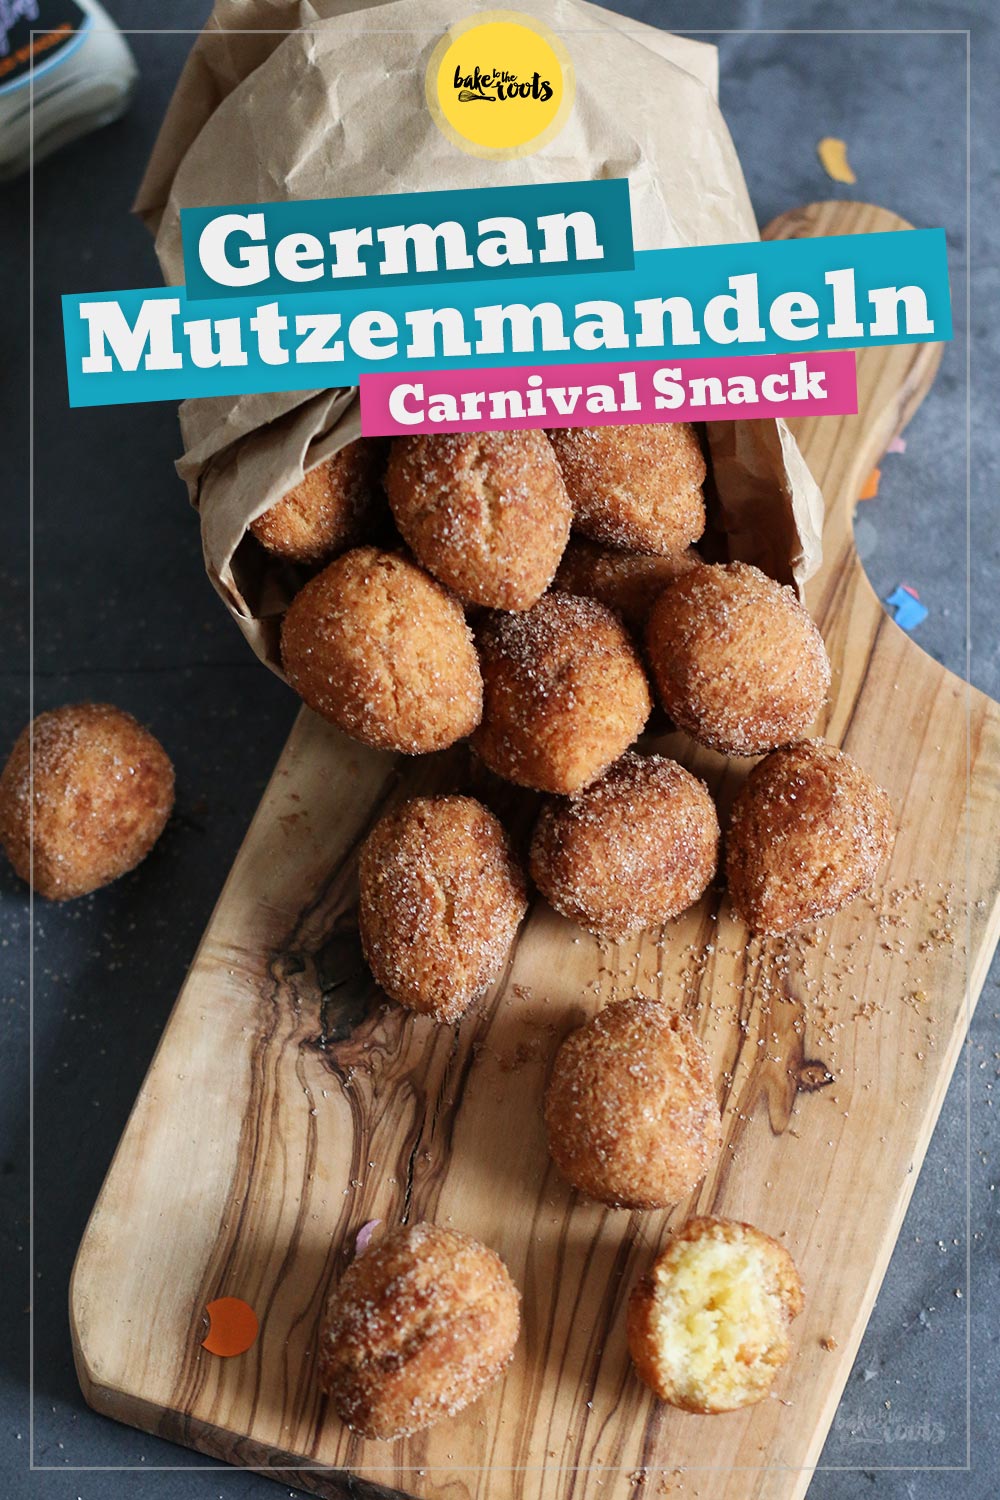 German Mutzenmandeln (Carnival Snack) | Bake to the roots